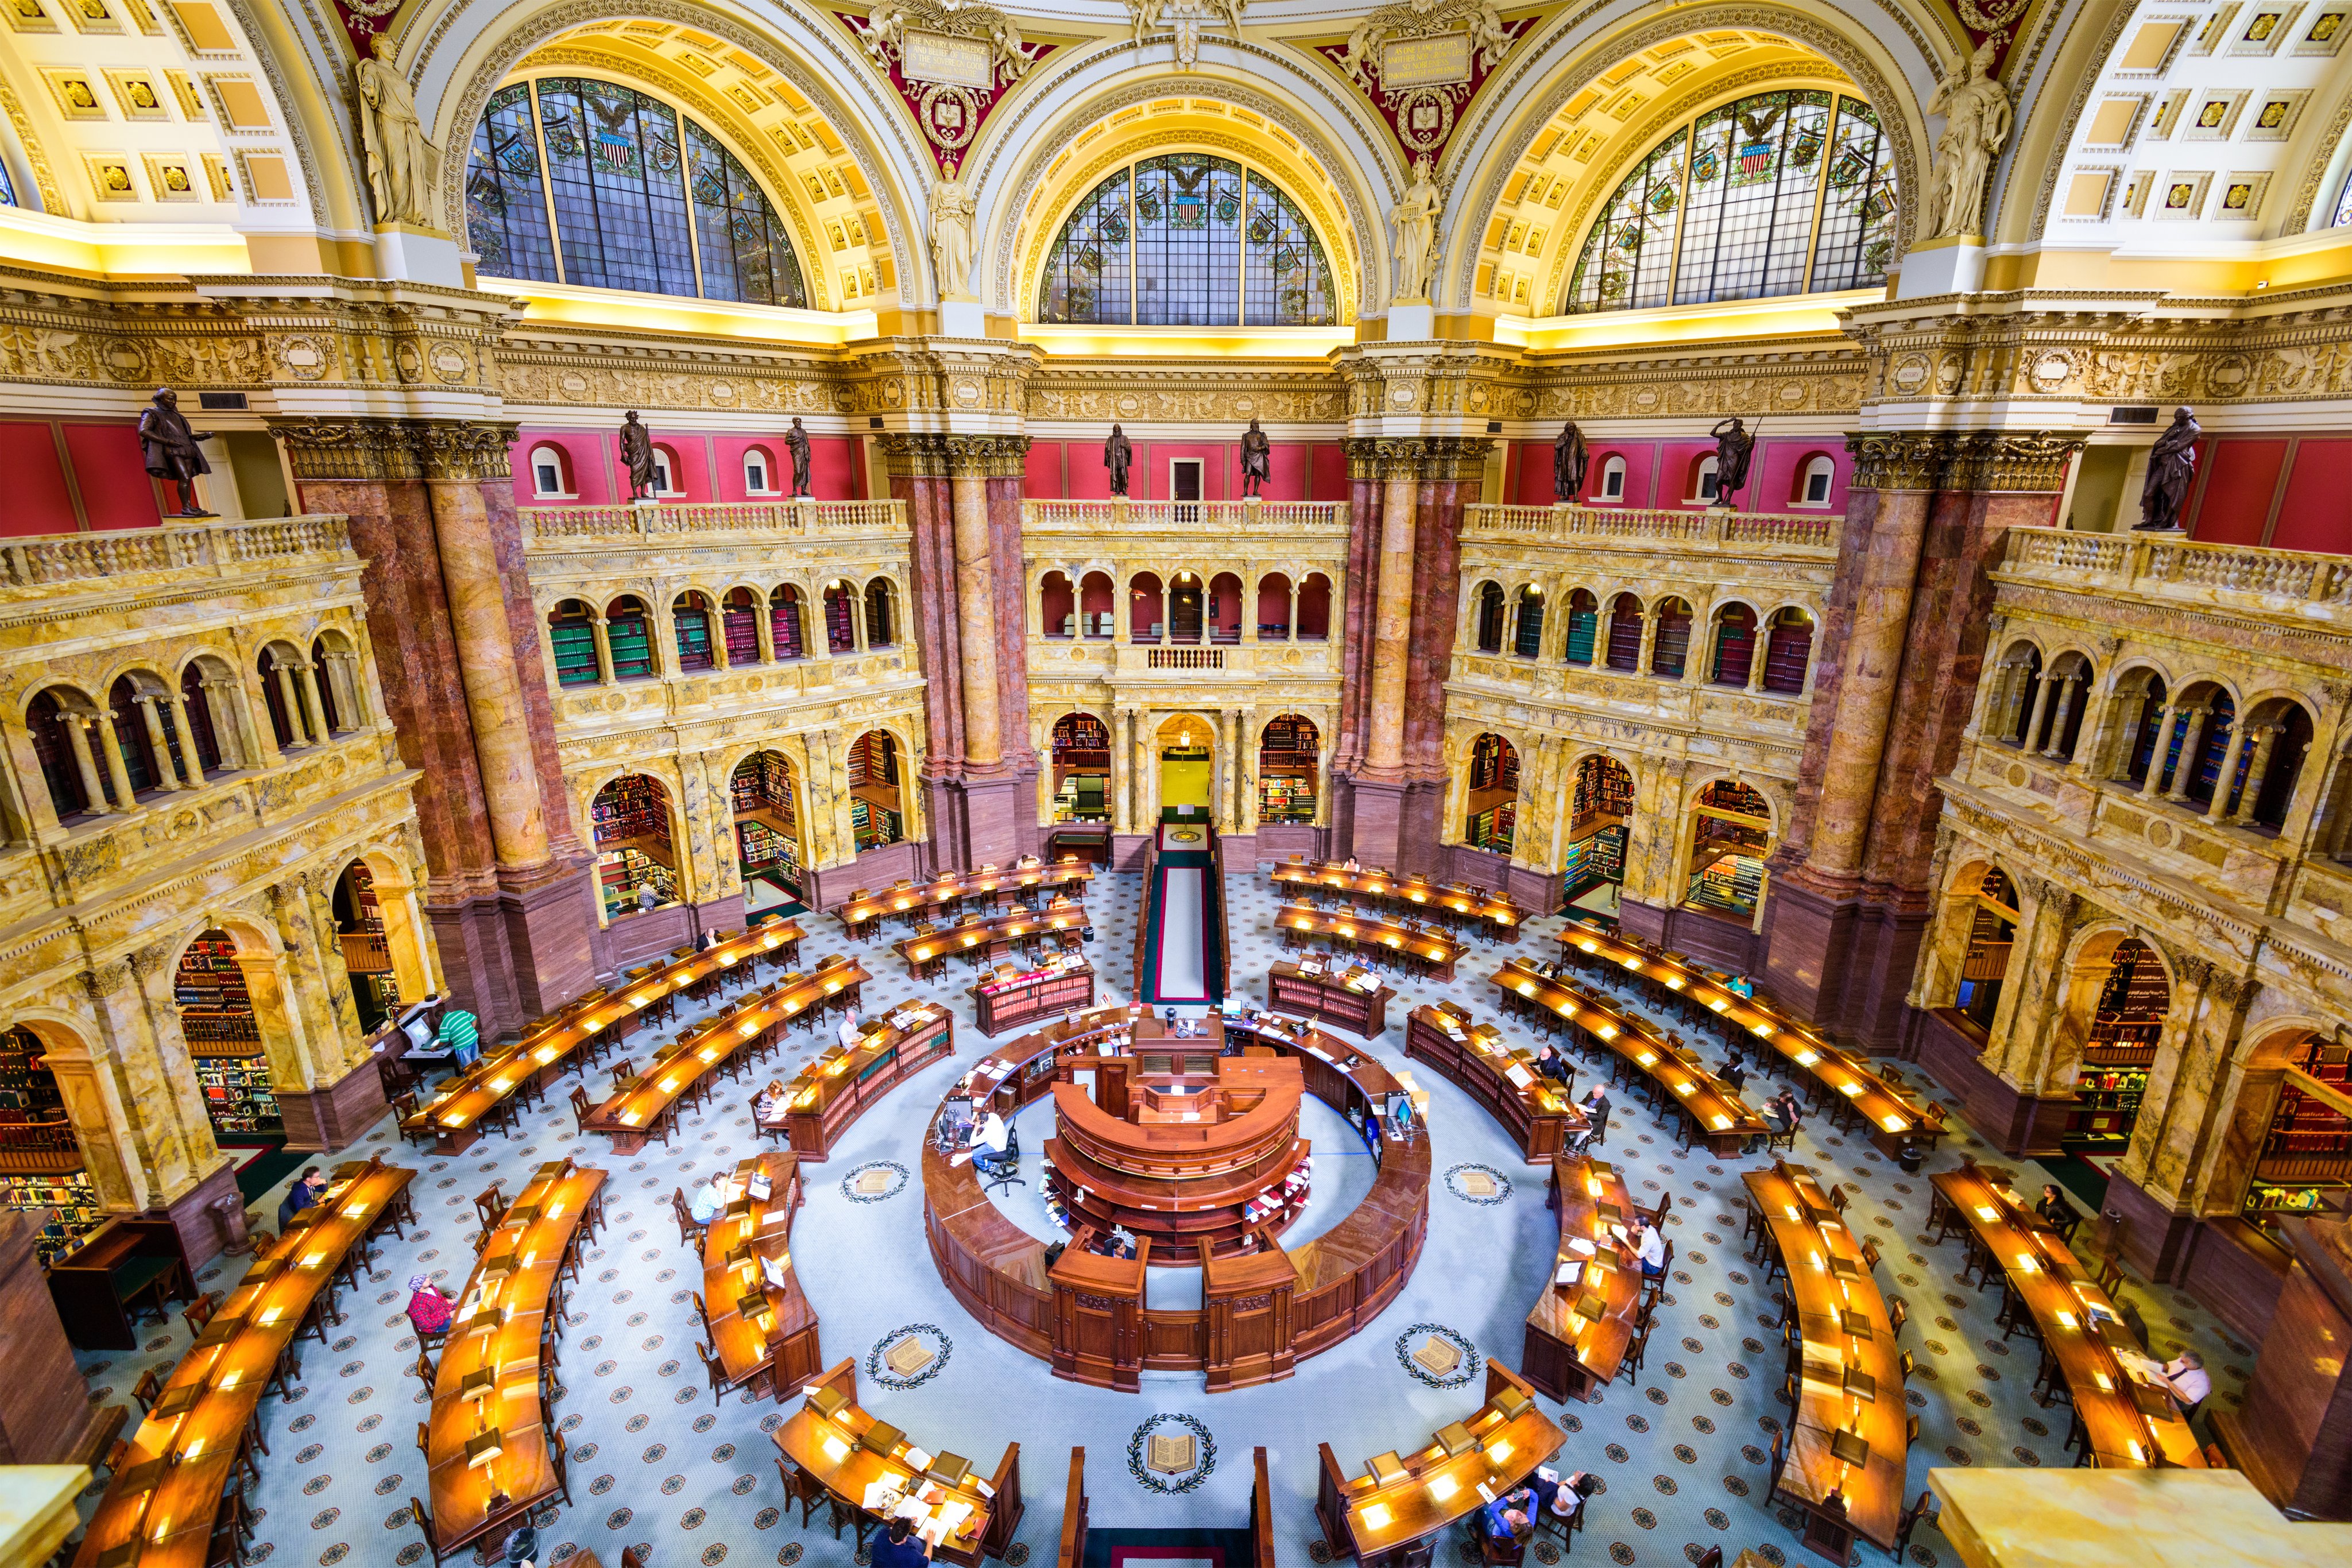 Auxiliardebiblioteca on Twitter: "💠#Biblioteca del Congreso en Washington,  DC #bibliotecasmaravillosas ➡️Es la Biblioteca más grande del mundo, la  Biblioteca del Congreso, se encuentra en tres edificios en el Capitolio. La  estructura más